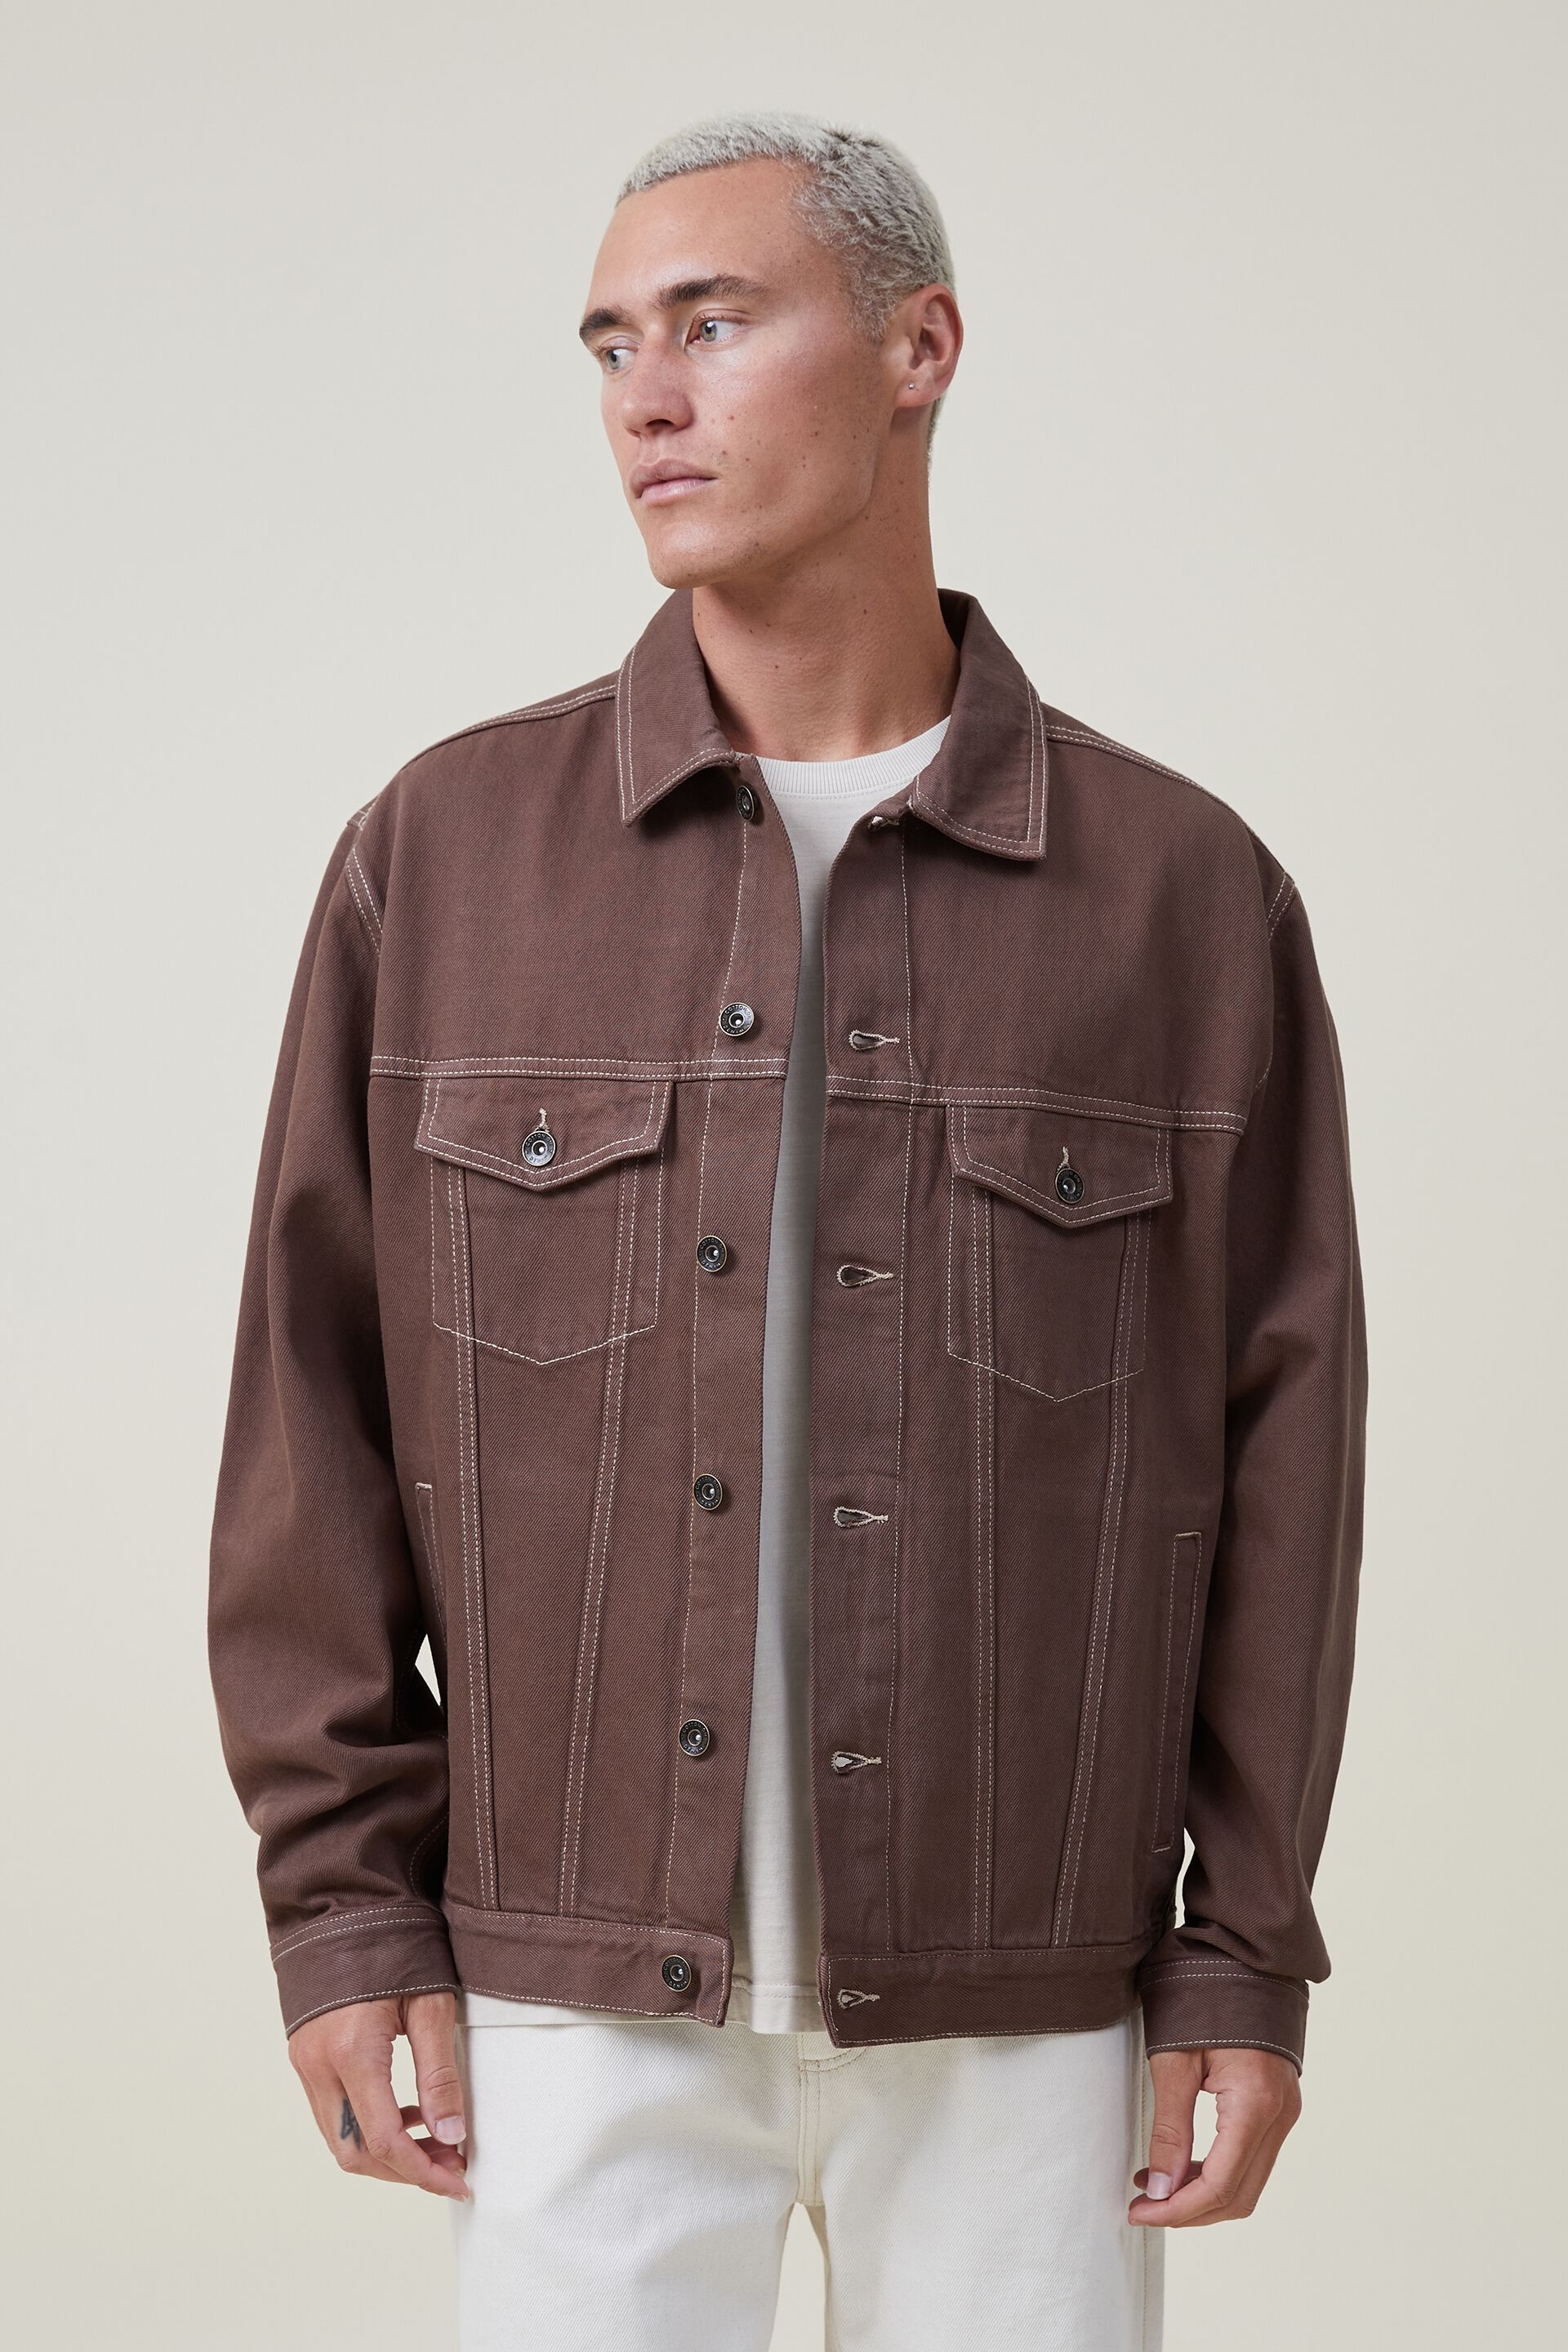 Buy Levi's Men's Brown Denim Jacket Online